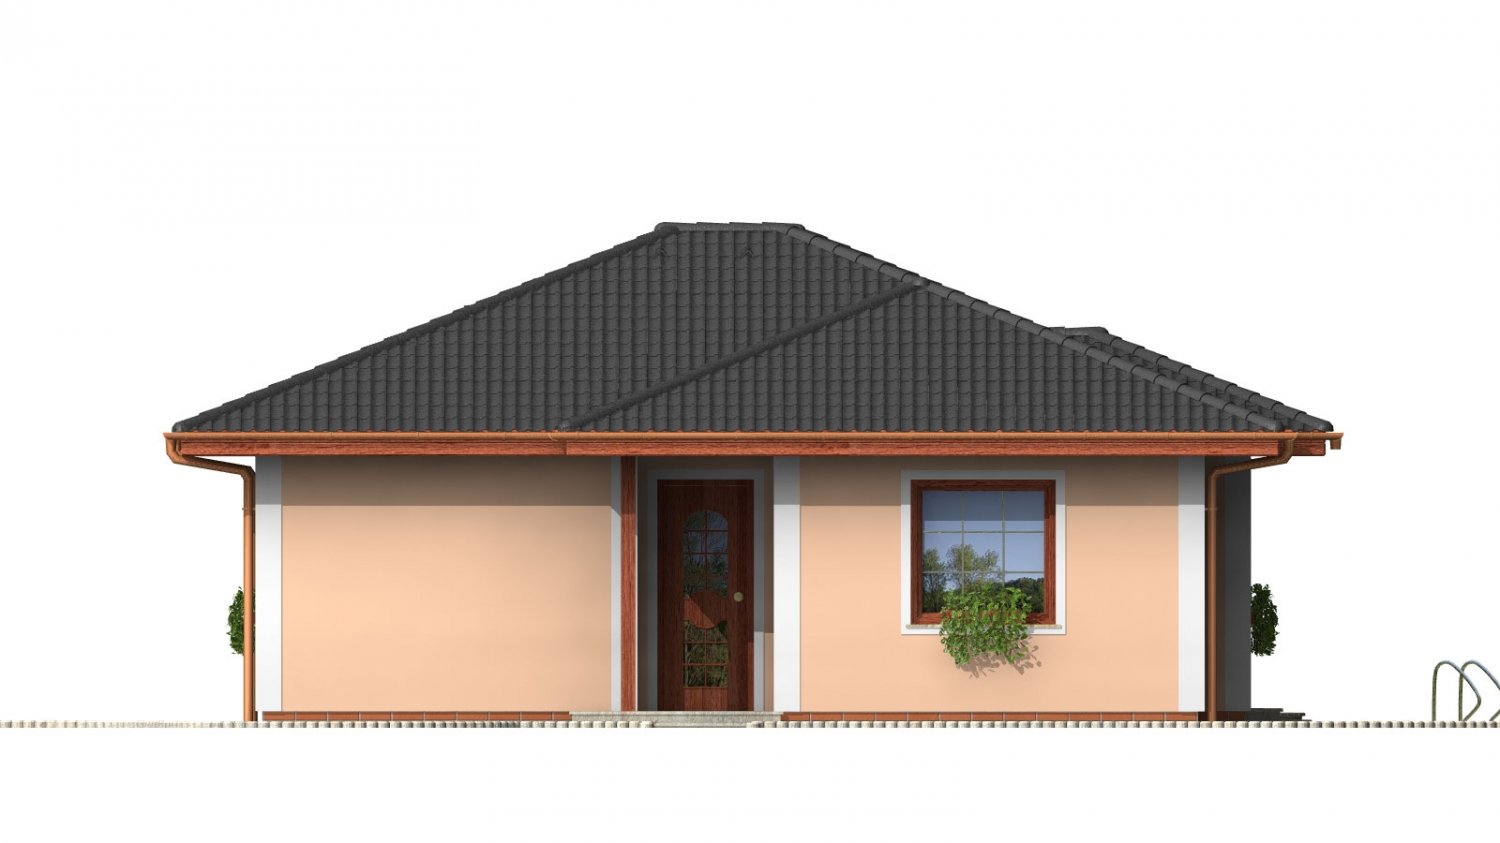 Pohľad 1. - Menší projekt domu s valbovou střechou.